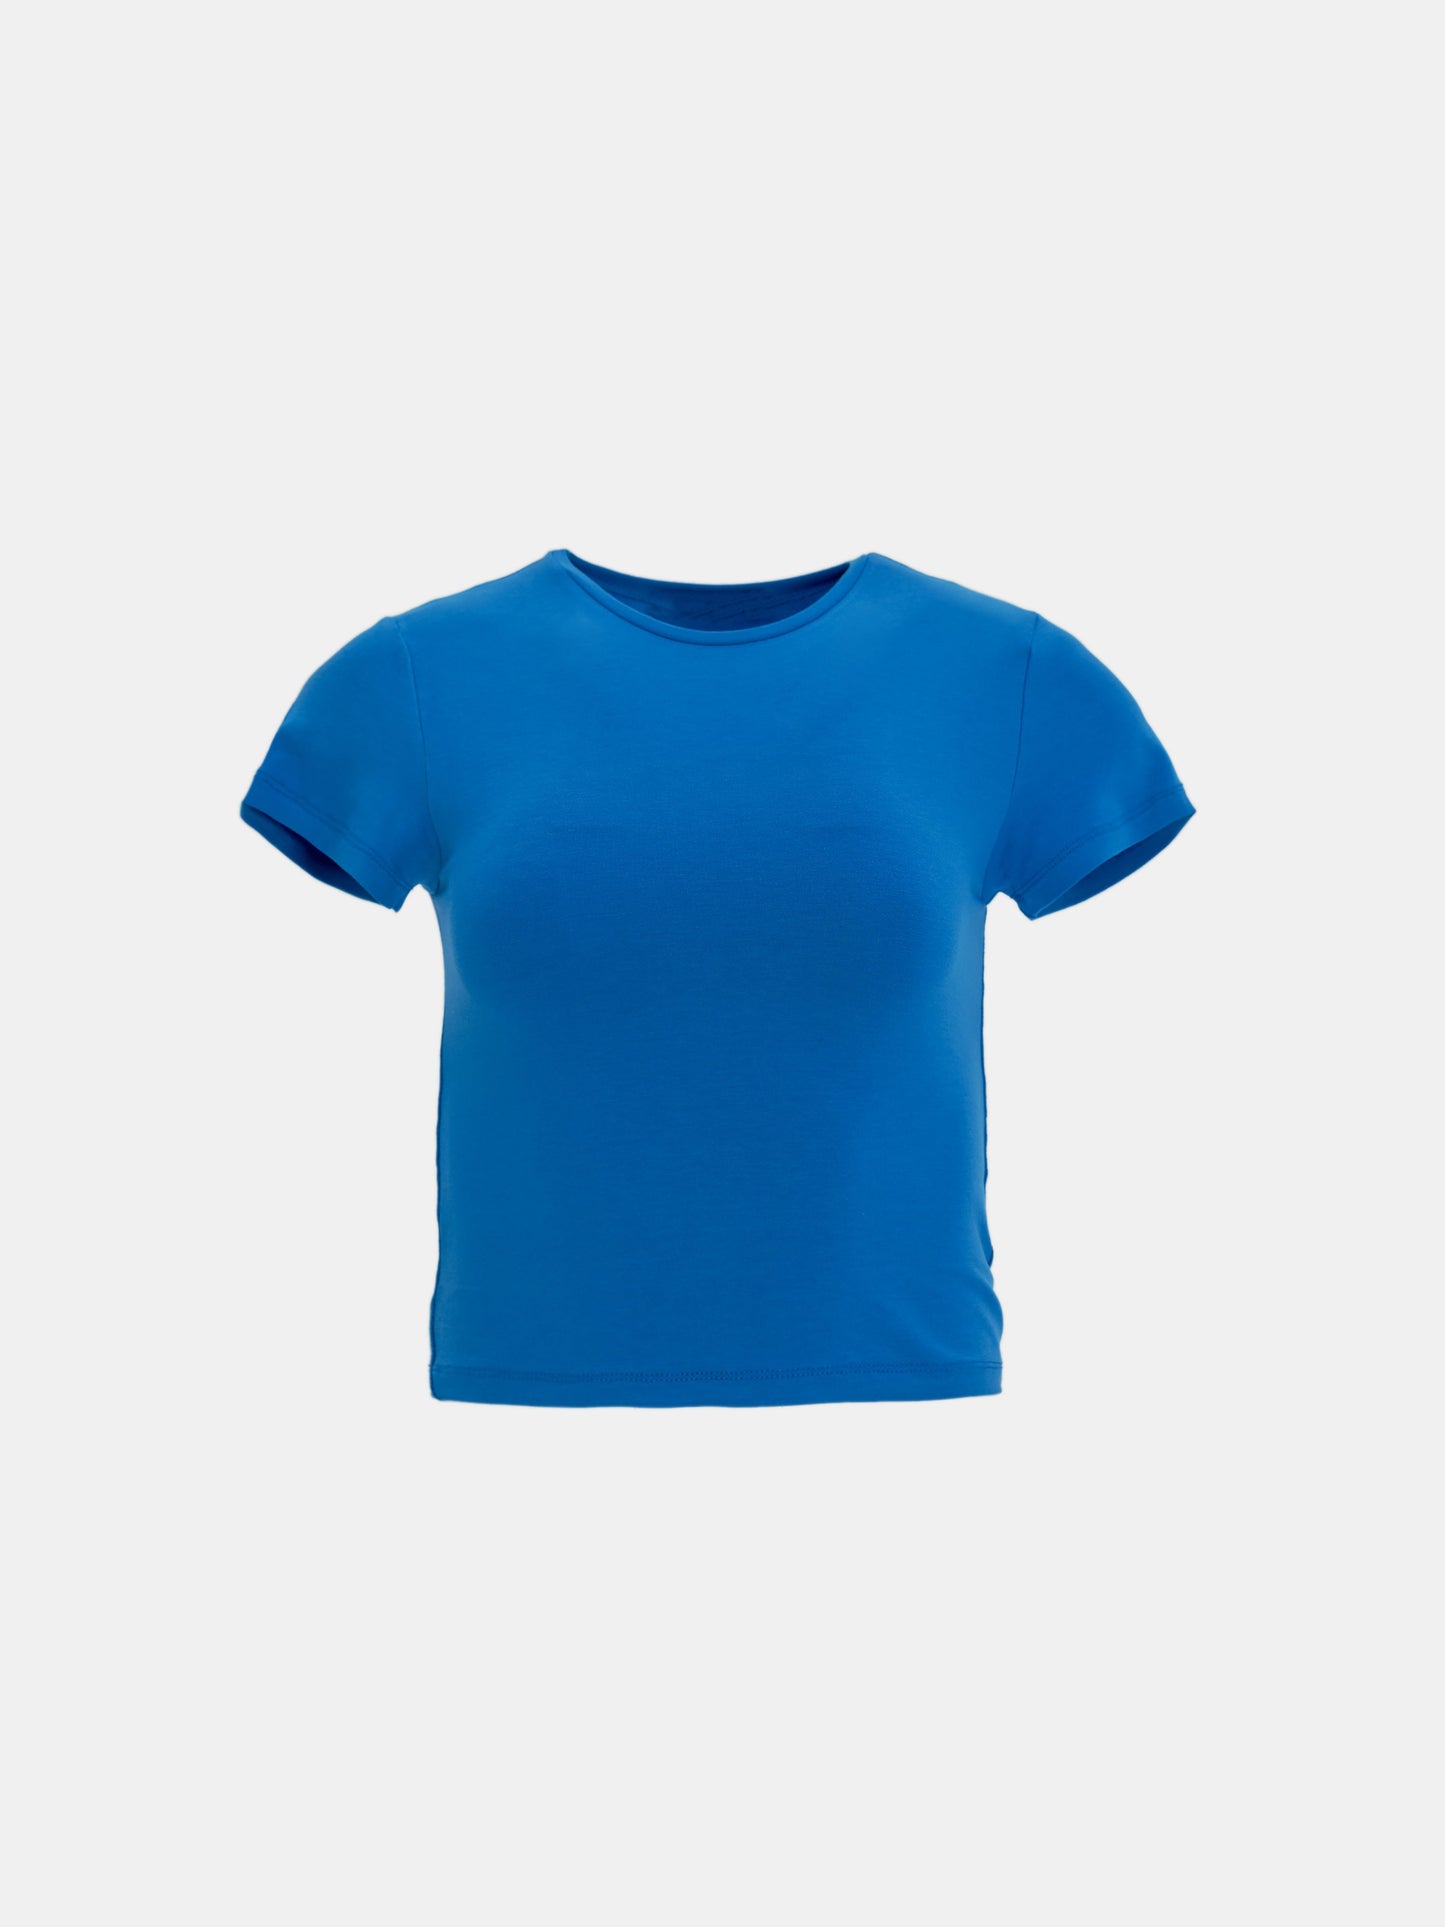 Shrunken Jersey T-shirt, Capri Blue